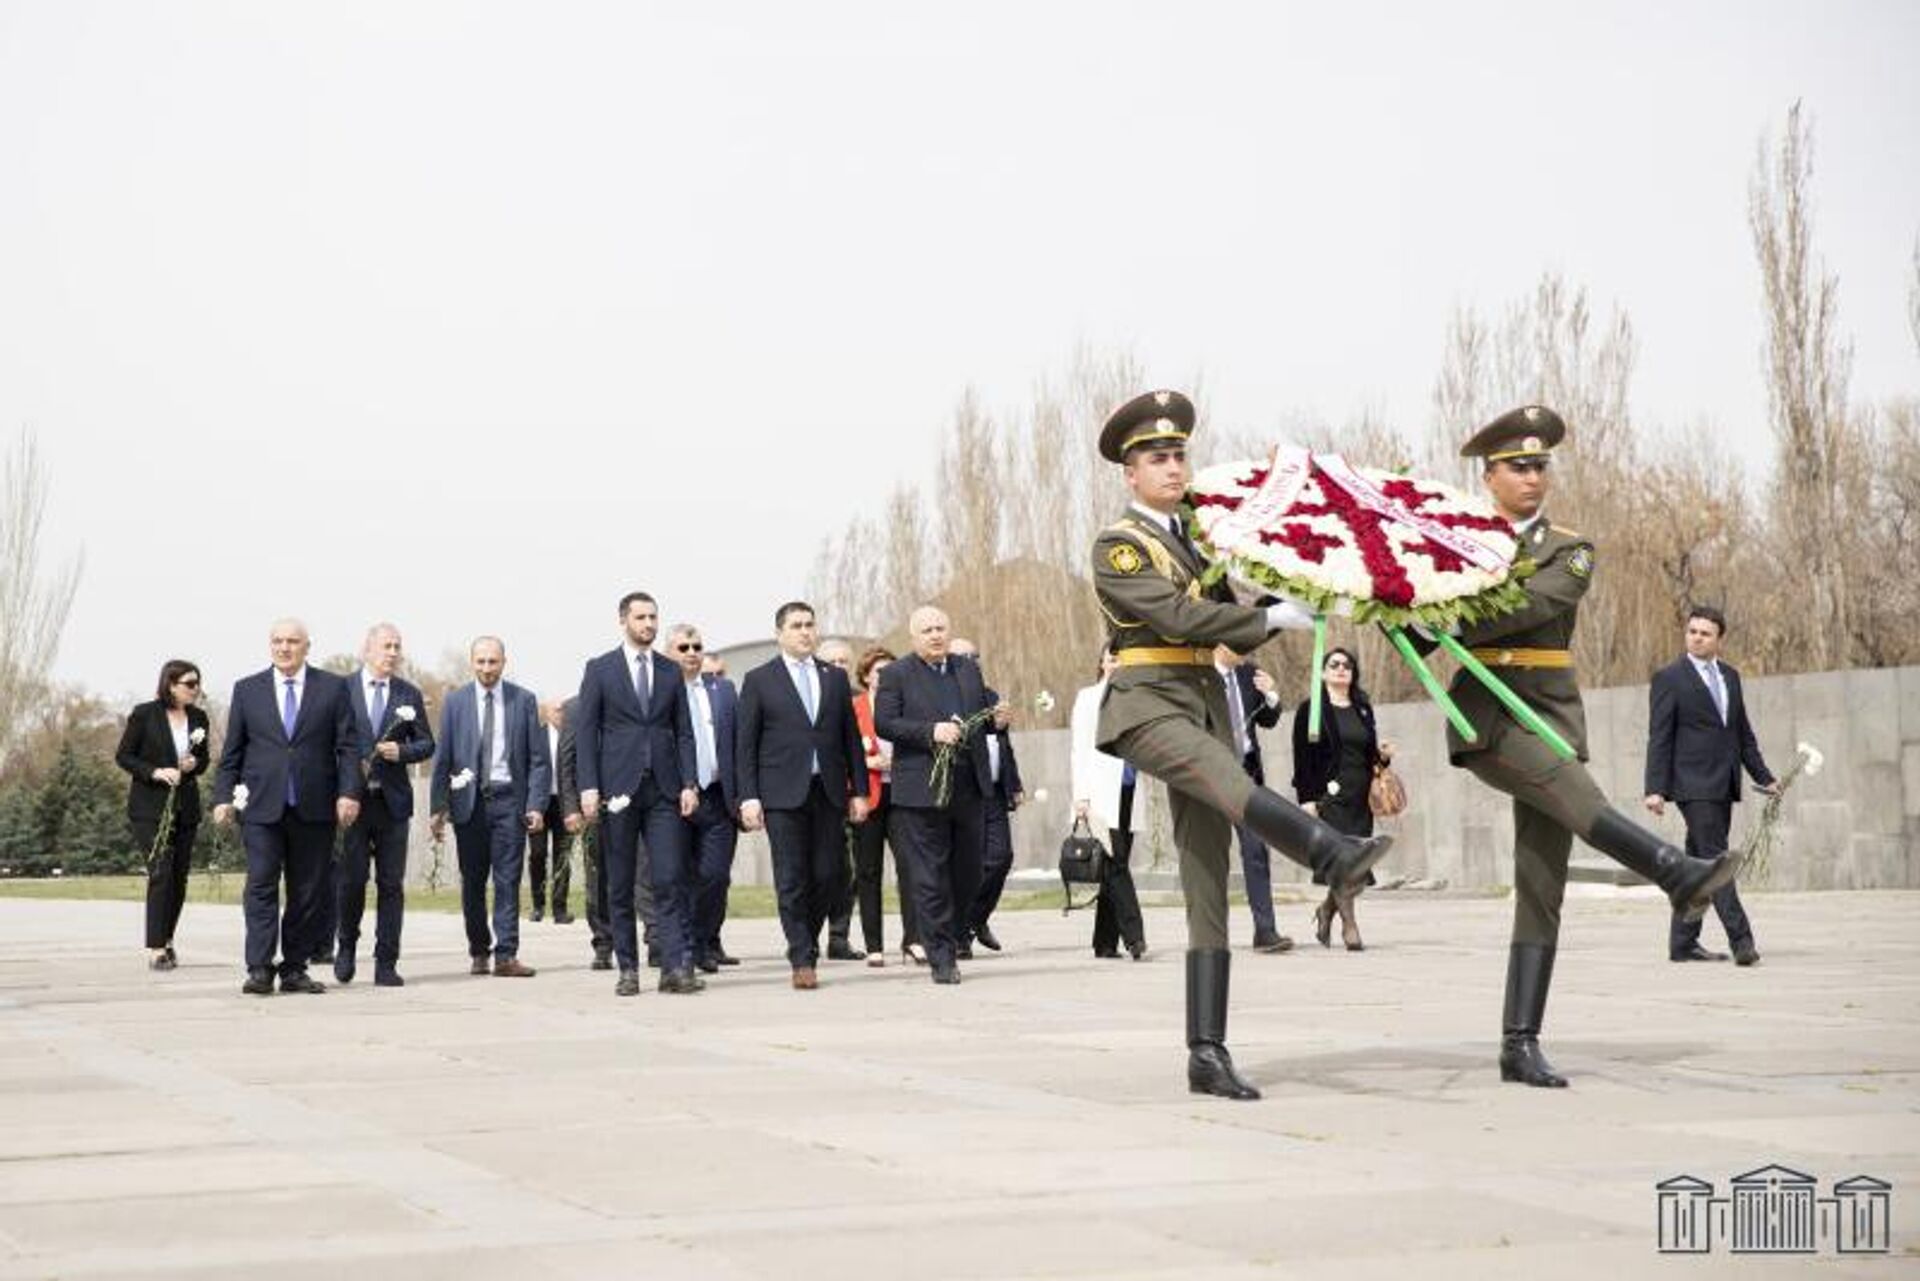 Վրաստանի խորհրդարանի նախագահ Շալվա Պապուաշվիլիի գլխավորած պատվիրակությունը ՀՀ ԱԺ փոխնախագահ, Հայաստան-Վրաստան բարեկամական խմբի ղեկավար Ռուբեն Ռուբինյանի ուղեկցությամբ այցելել է Ծիծեռնակաբերդի հուշահամալիր (5 ապրիլի, 2022թ). Երևան - Sputnik Արմենիա, 1920, 05.04.2022